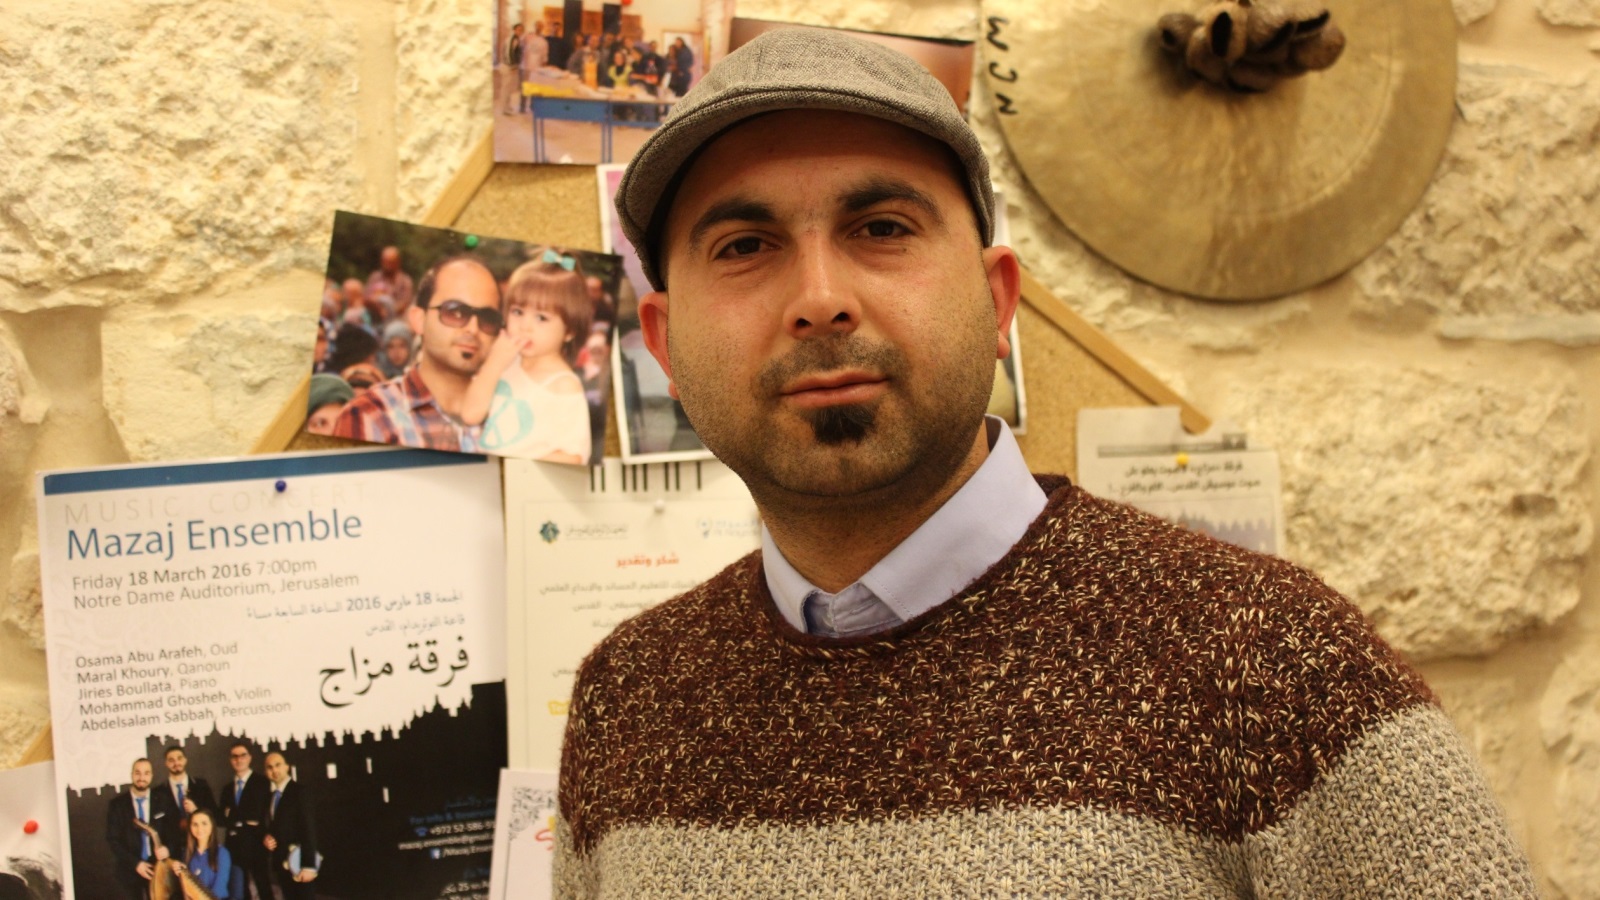  صبّاح عازف الآلات الإيقاعية: فرقة مزاج ولدت من رحم المعاناة الفلسطينية 